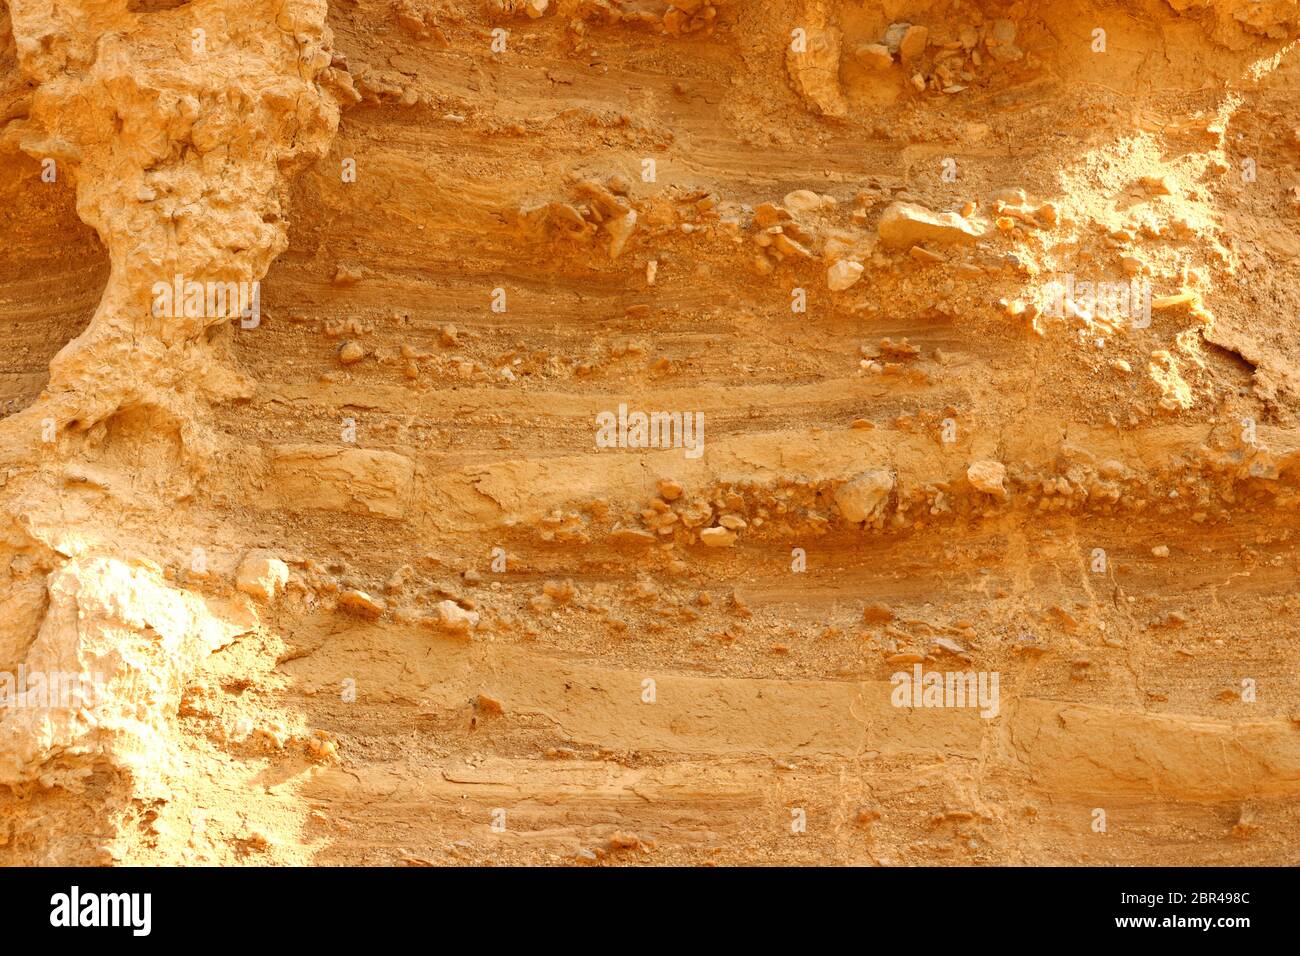 Primer plano de sedimentos estratificados expuestos en la región natural semidesértica Bardenas reales, Reserva de la Biosfera de la UNESCO, Navarra, España Foto de stock